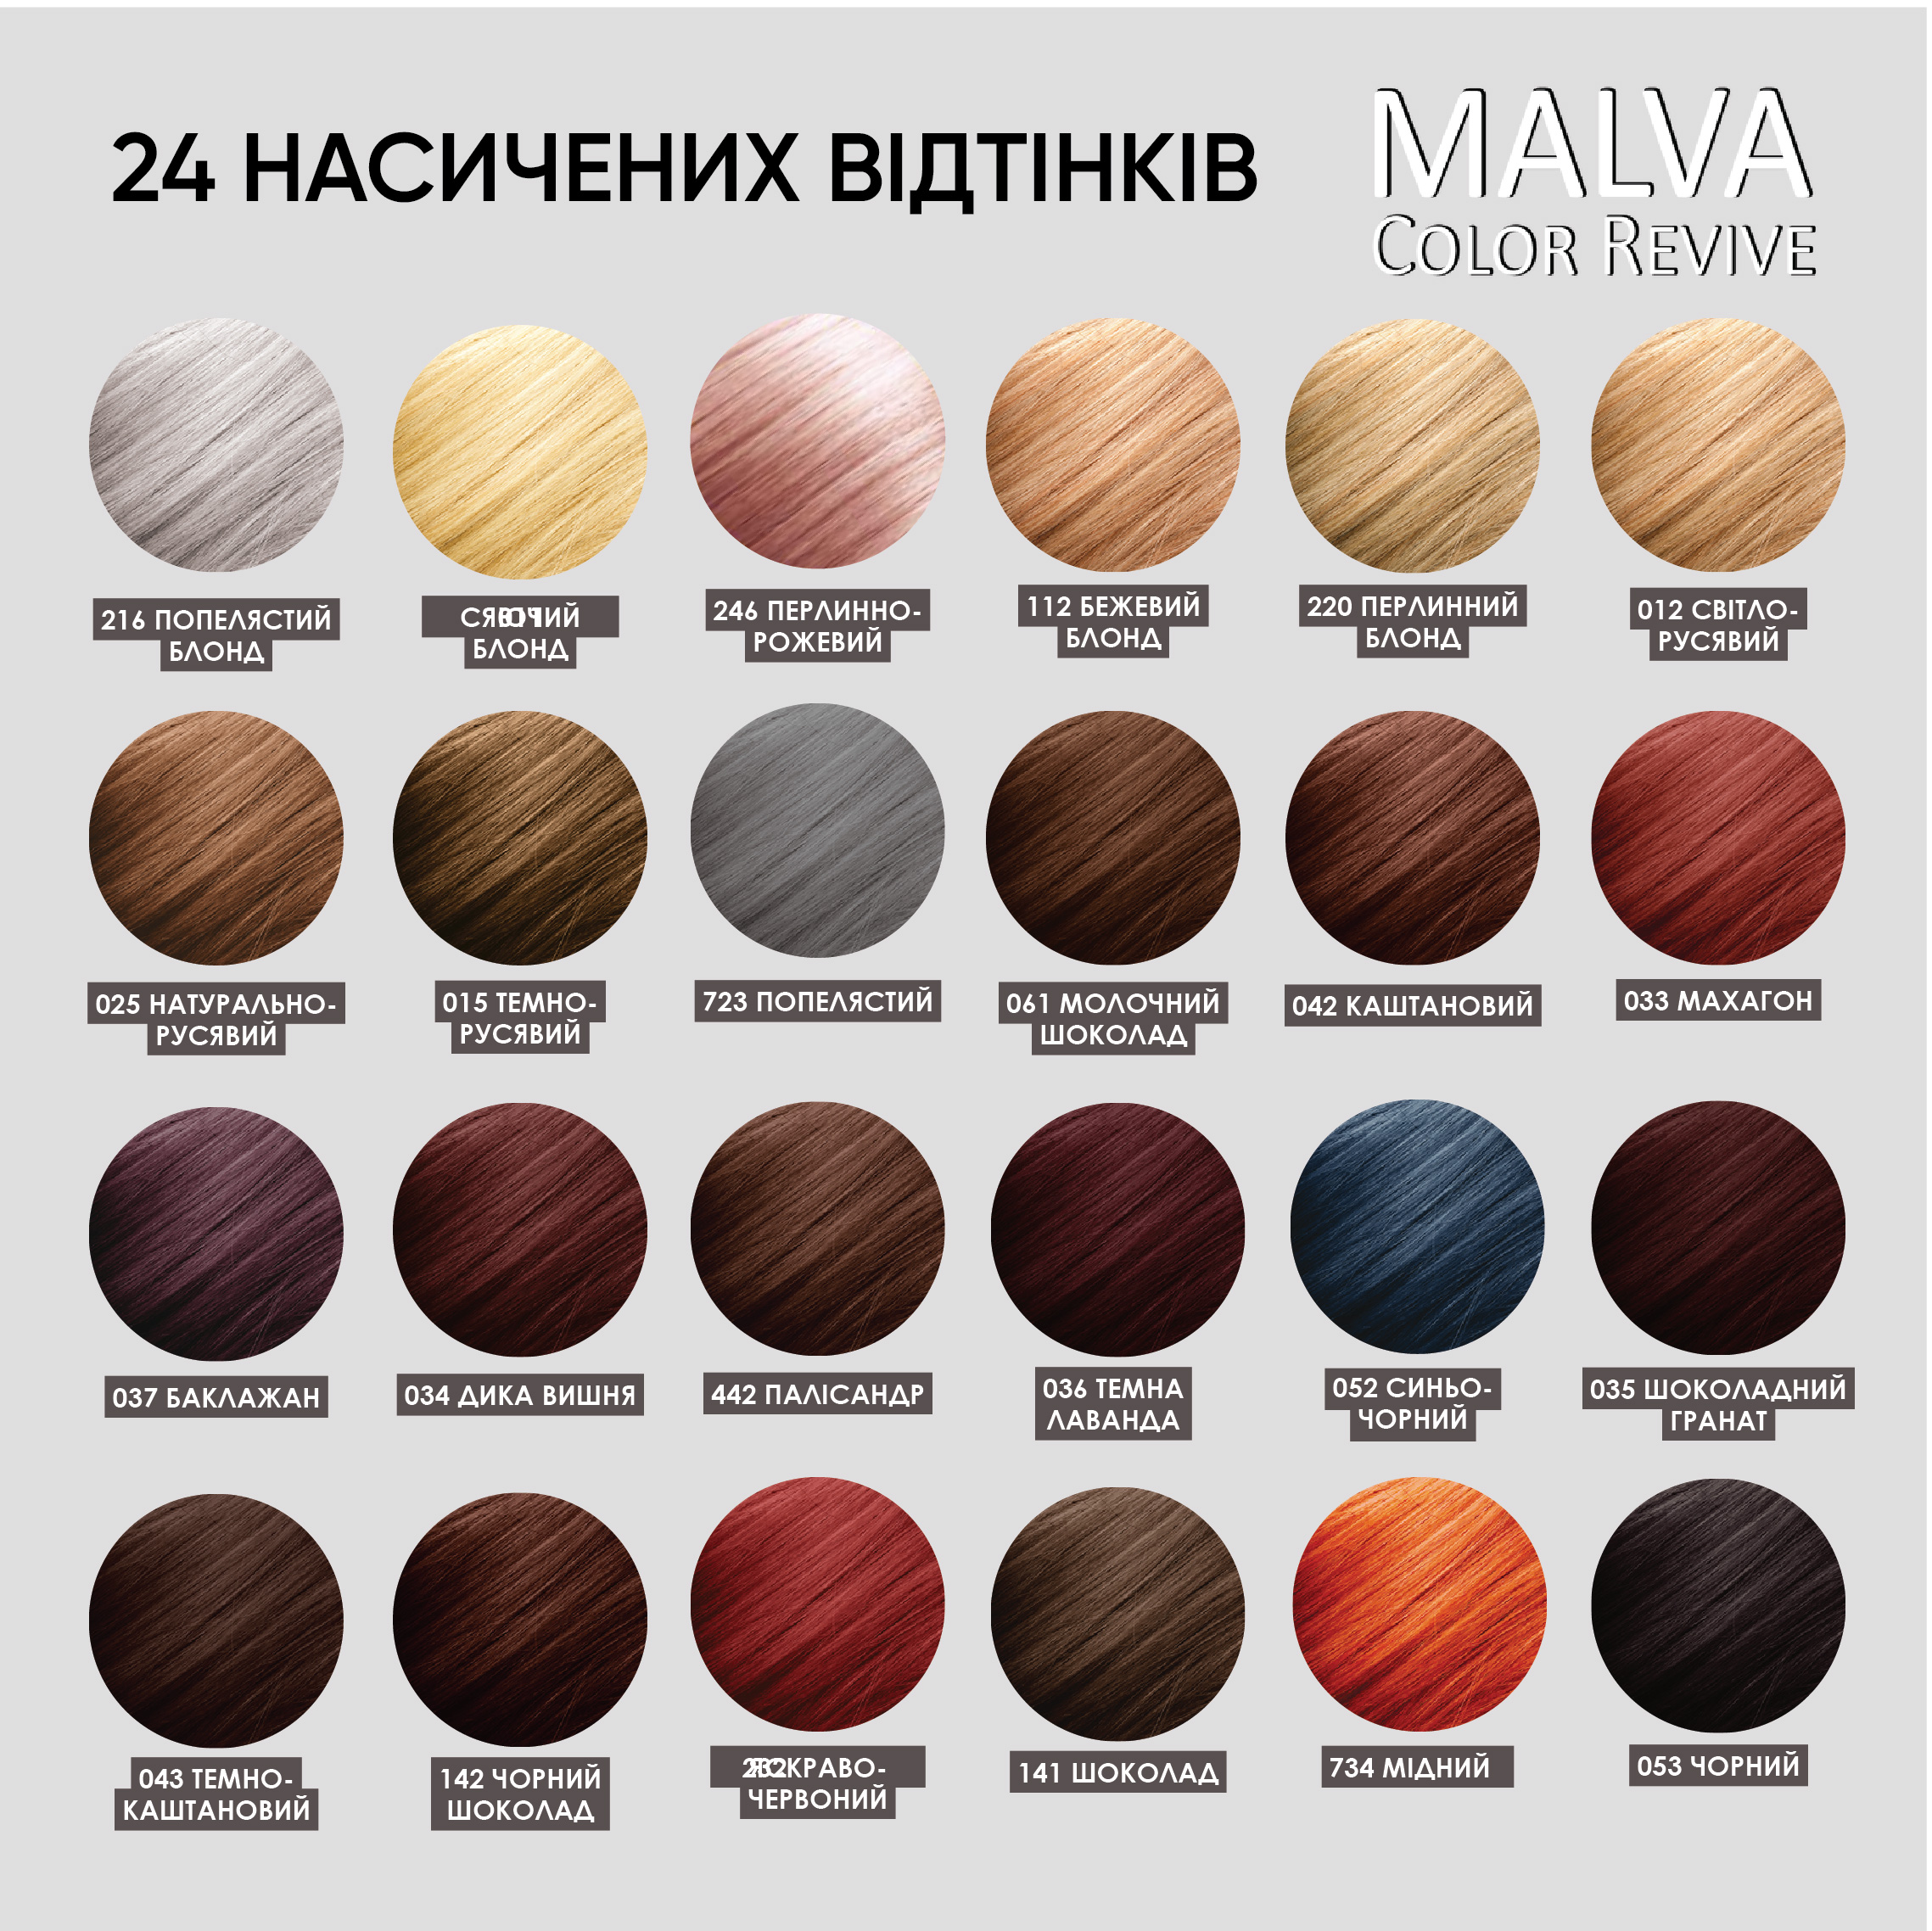 Стійка крем-фарба для волосся Malva Color Revive відтінок 035 Шоколадний гранат - фото 6